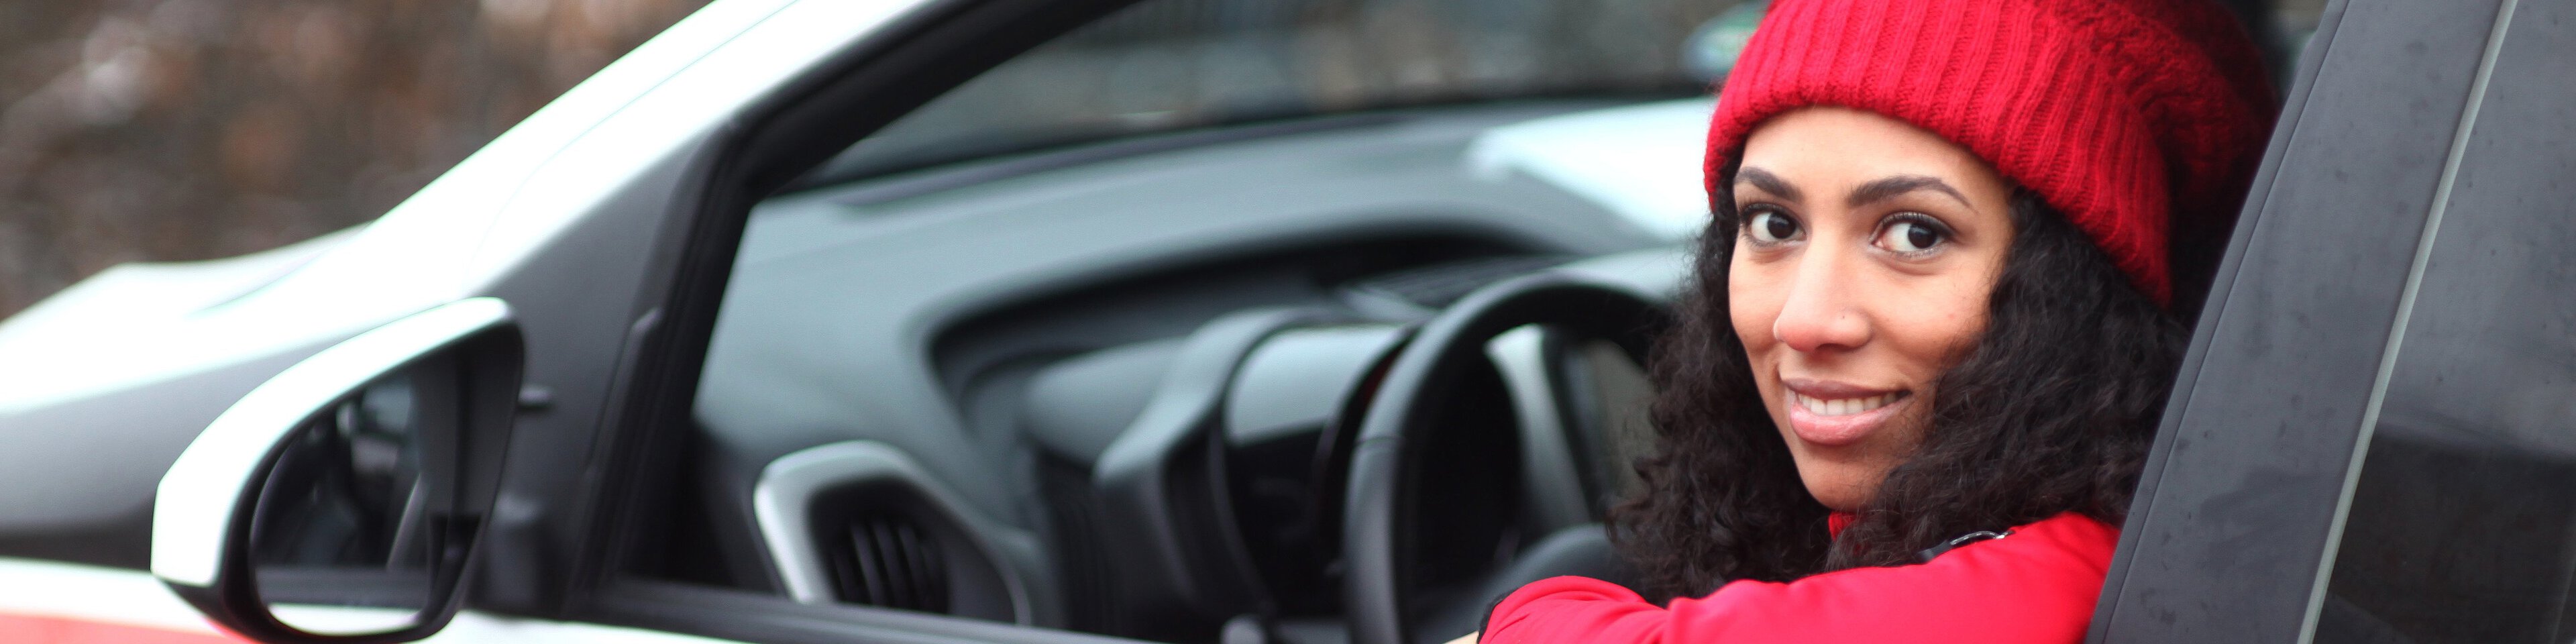 Dunkelhaarige Frau mit langen locken und roter Mütze und Pulli schaut lächelnd aus der Fahrertür eines Caritas Pflege Auto heraus. | © heydenaber